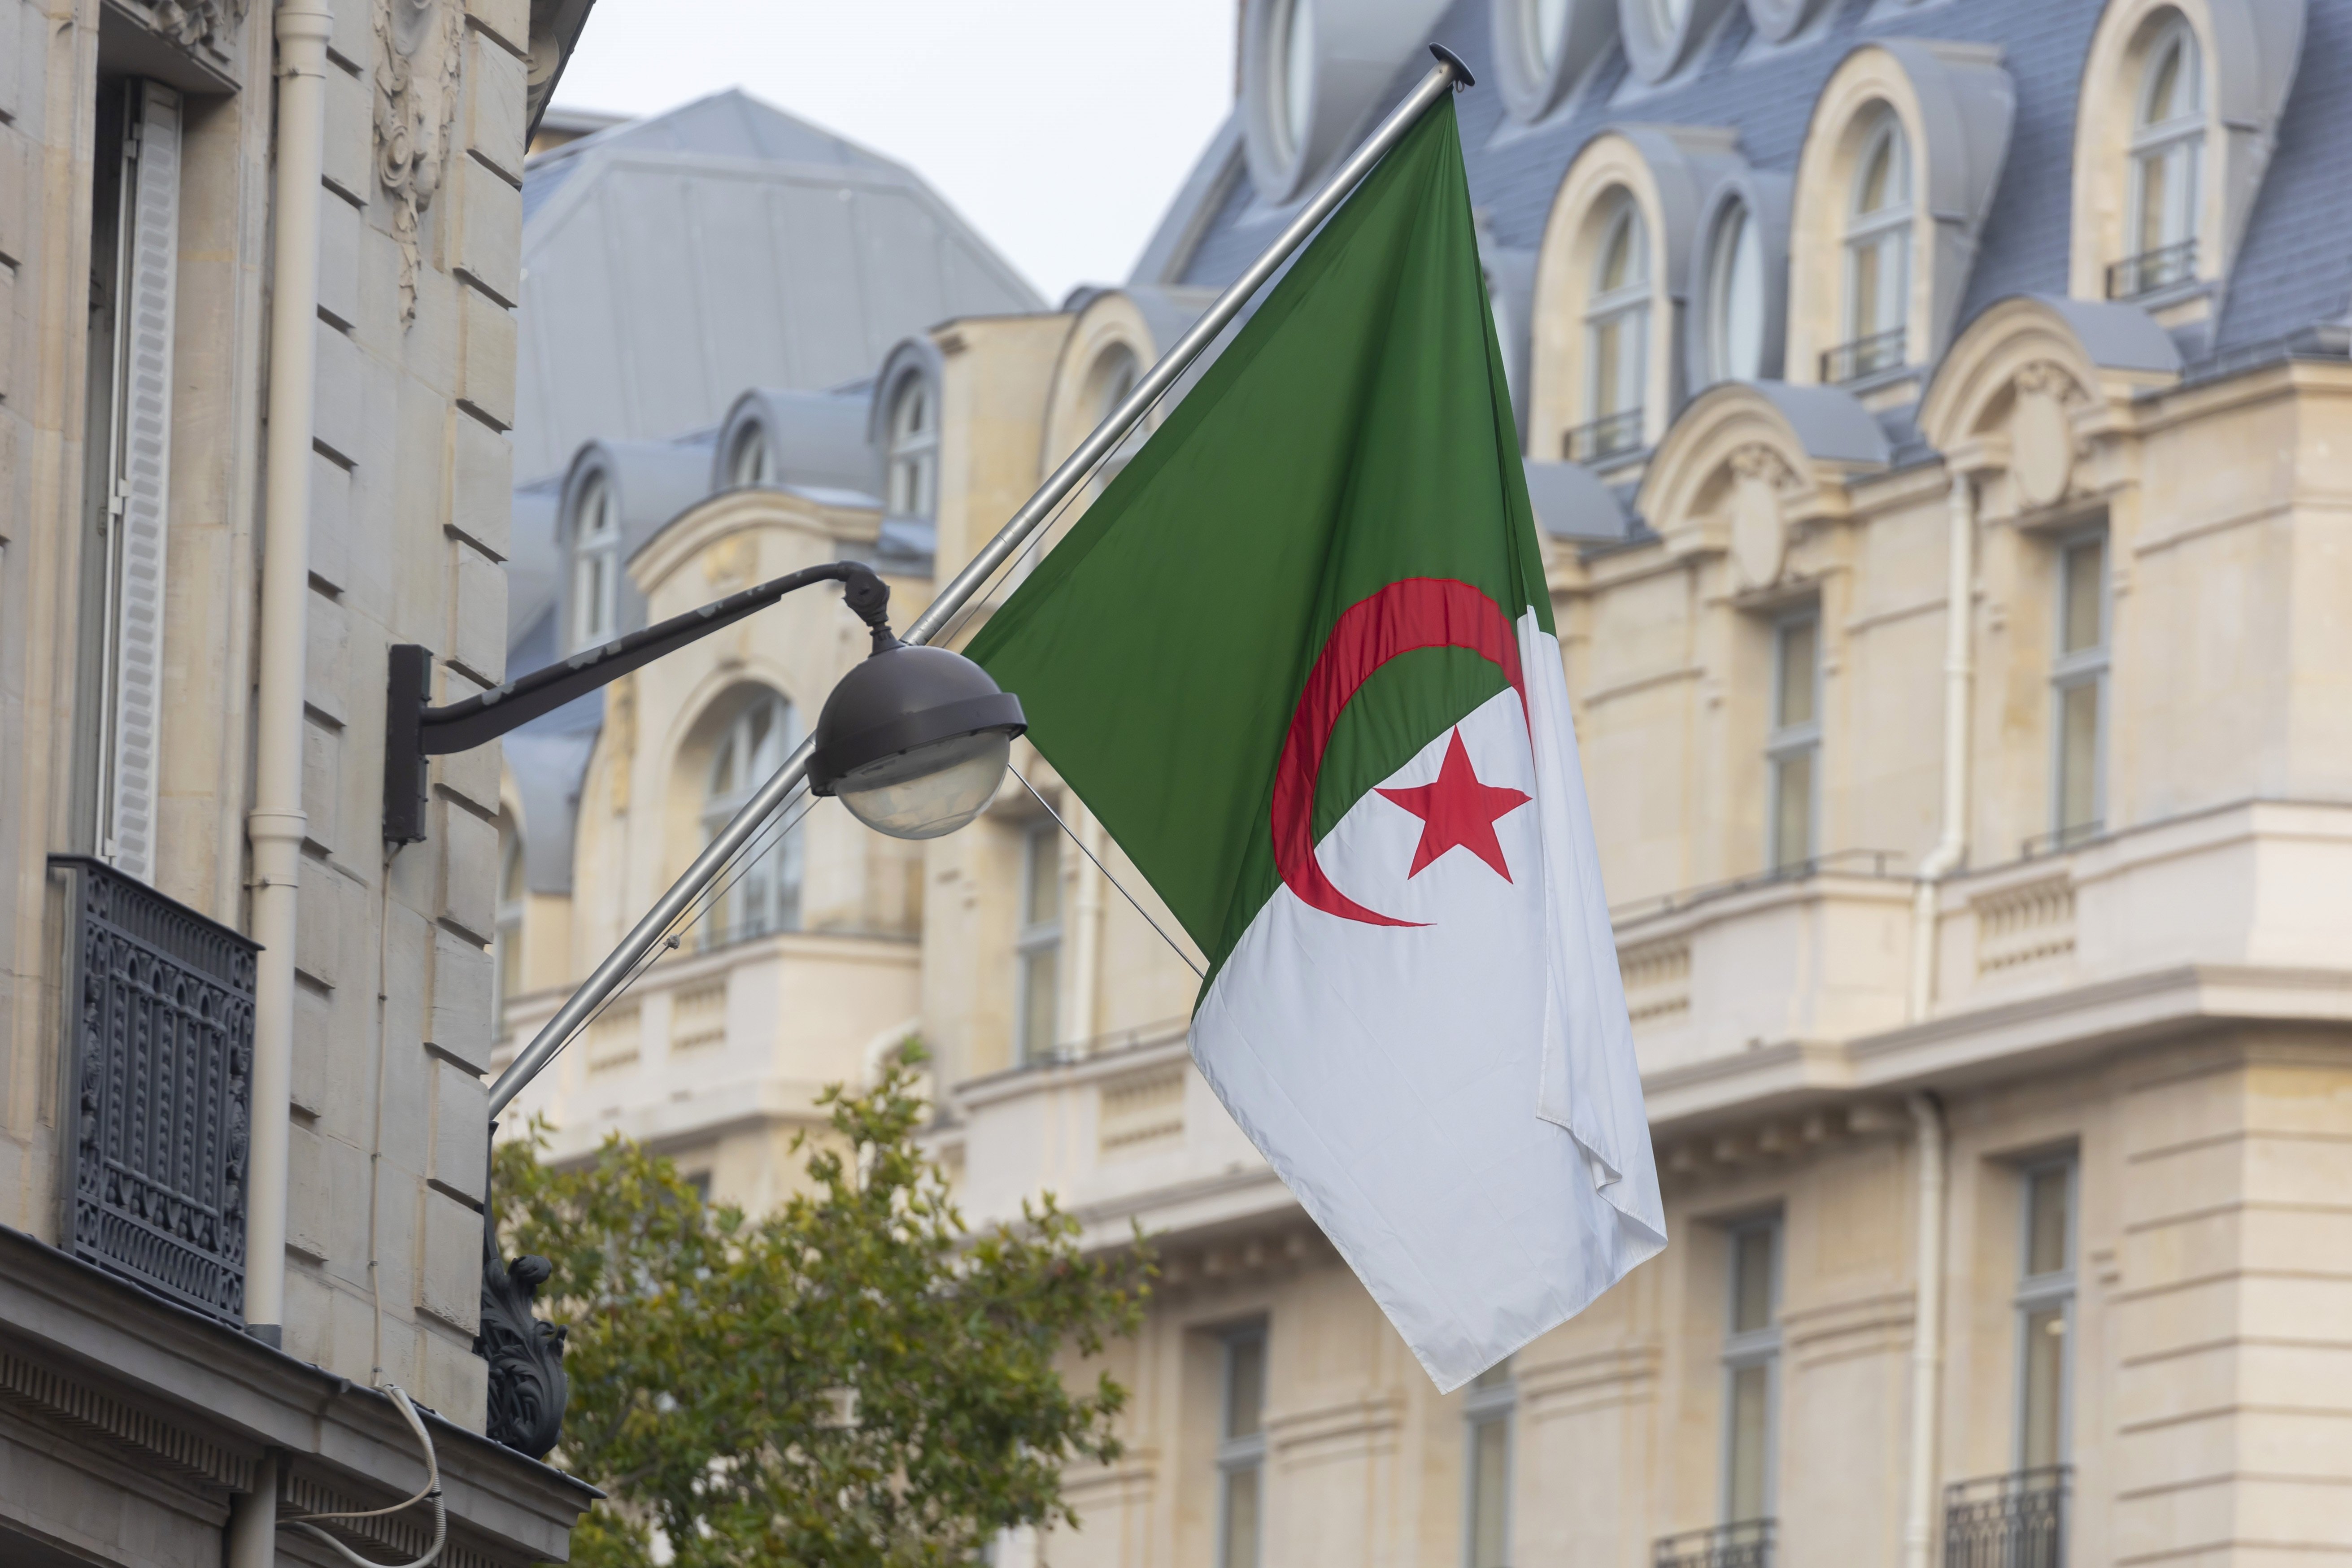 Algèria desmenteix Espanya: no els van avisar del gir de guió al Sàhara Occidental